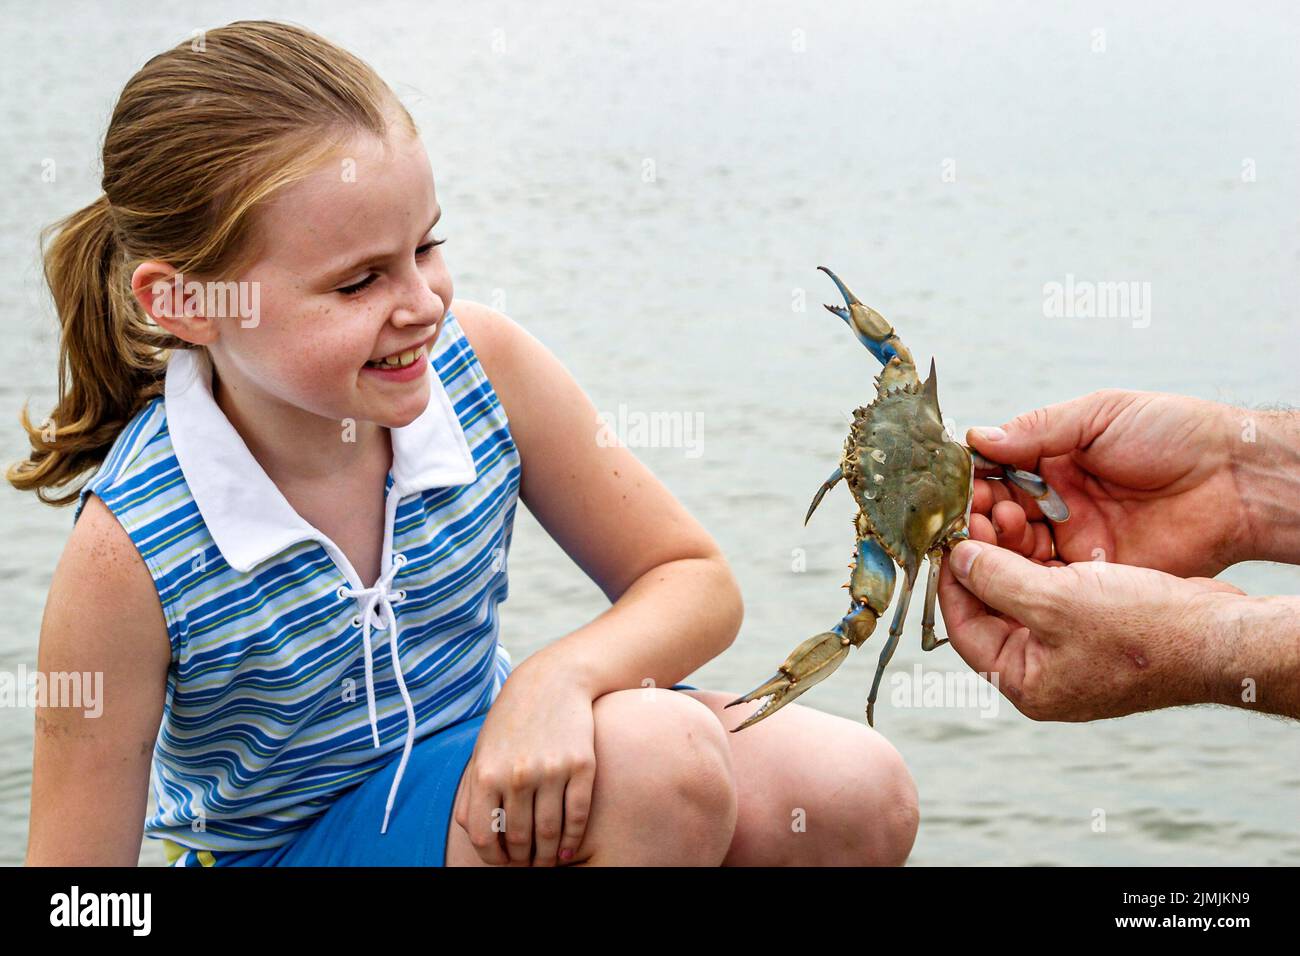 Newport News Virginia, cerca del puente James River Bridge, pesca, recreación, muelle acuático, una chica que busca cangrejos, visitantes grupo de vacaciones Foto de stock